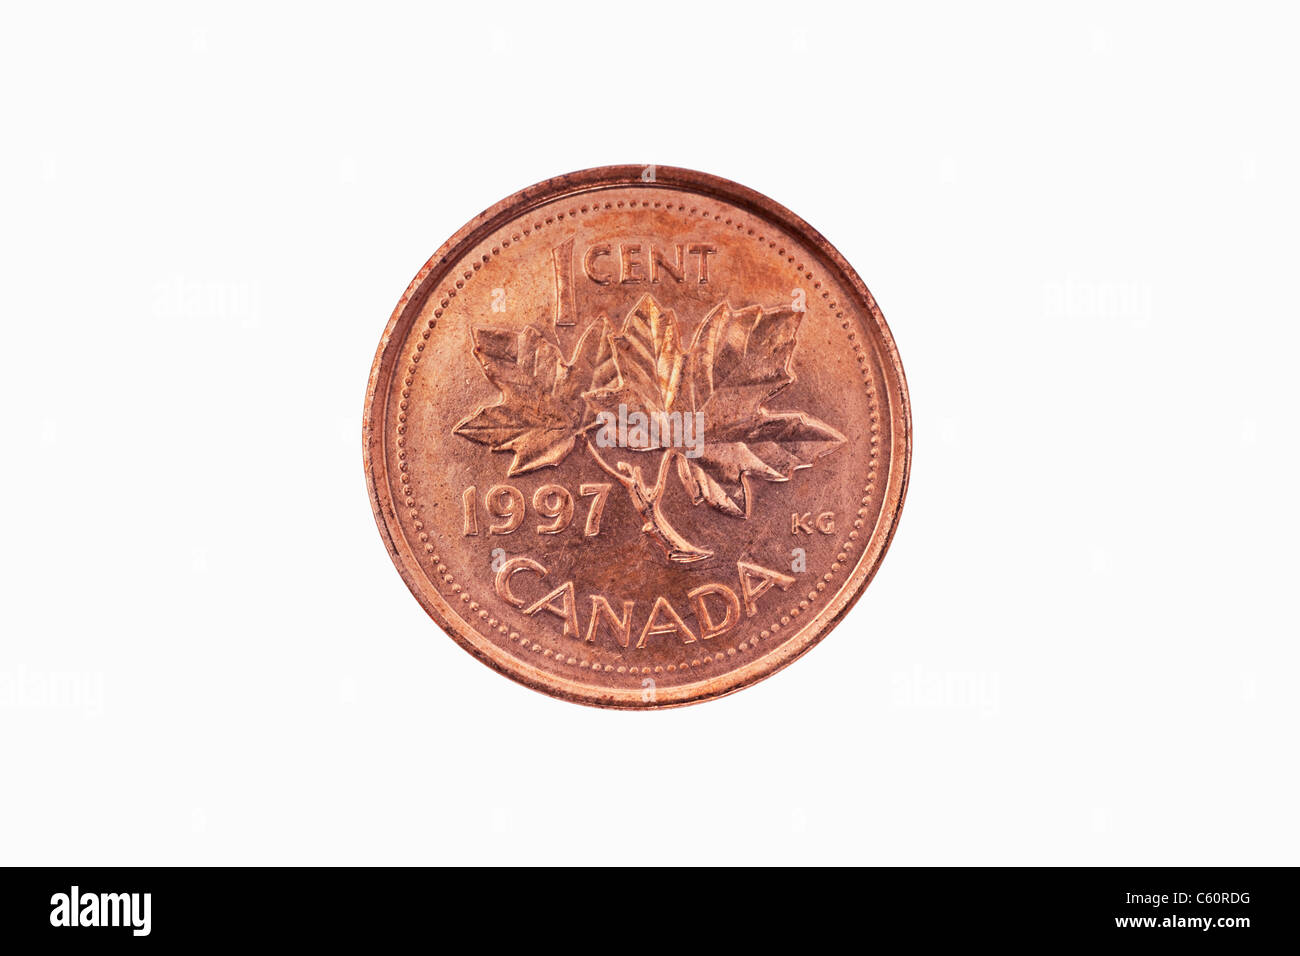 Detailansicht einer kanadischen 1 100 Münze aus dem Jahr 1997 | photo de détail un 1 cents du Canada à partir de l'année 1997 Banque D'Images